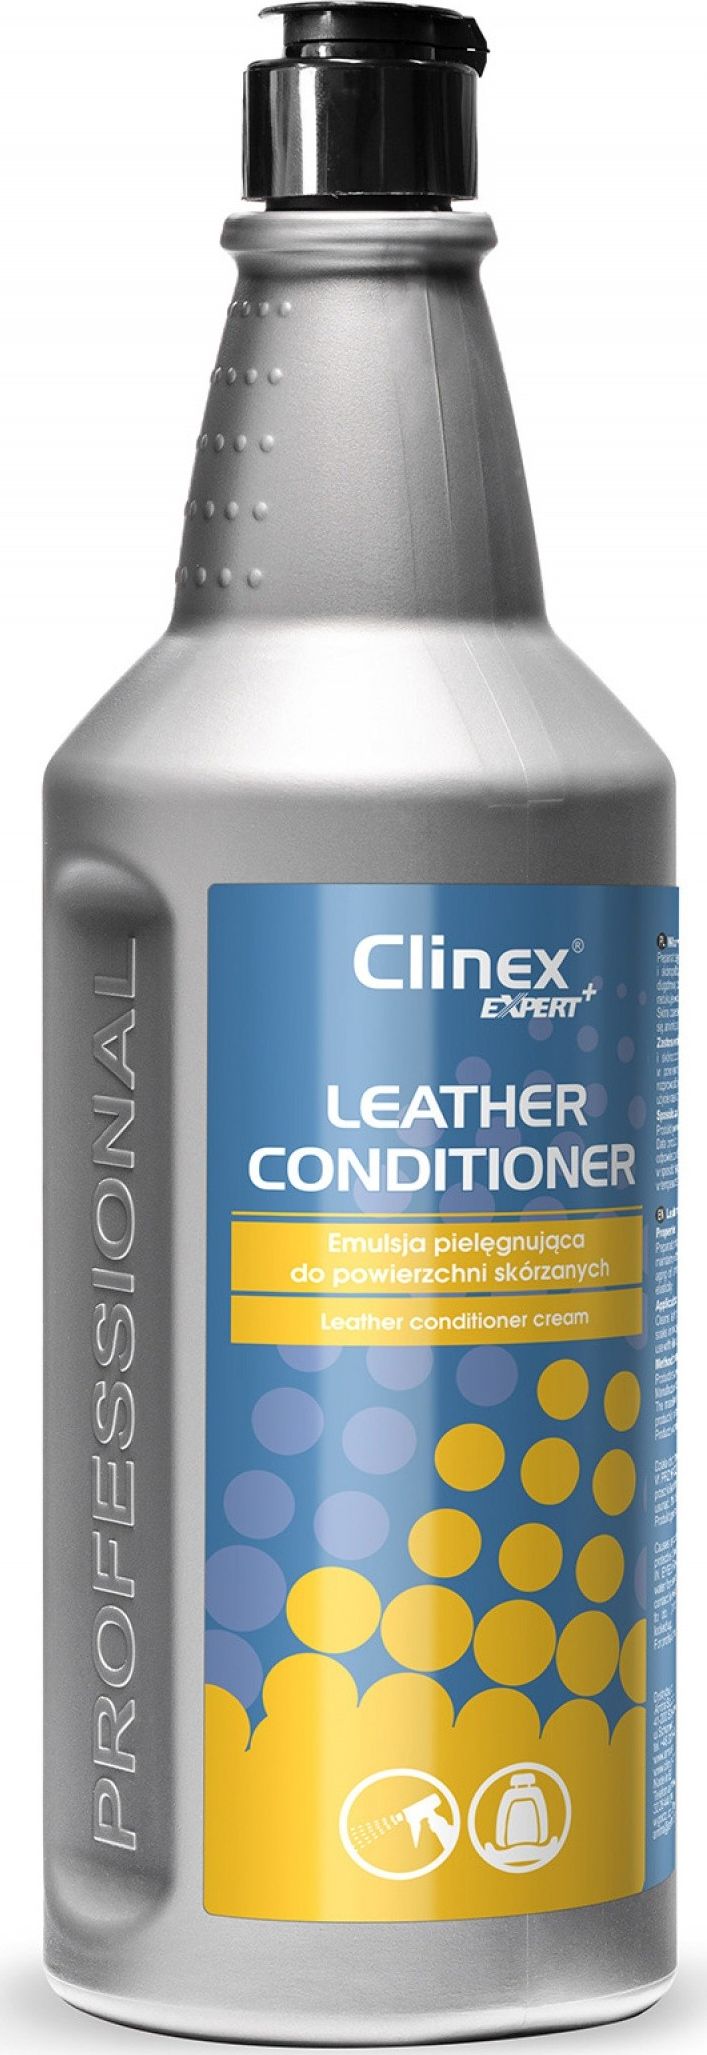 Produs pentru ingrijirea suprafetelor din piele-Leather conditioner-Clinex expert-1 L